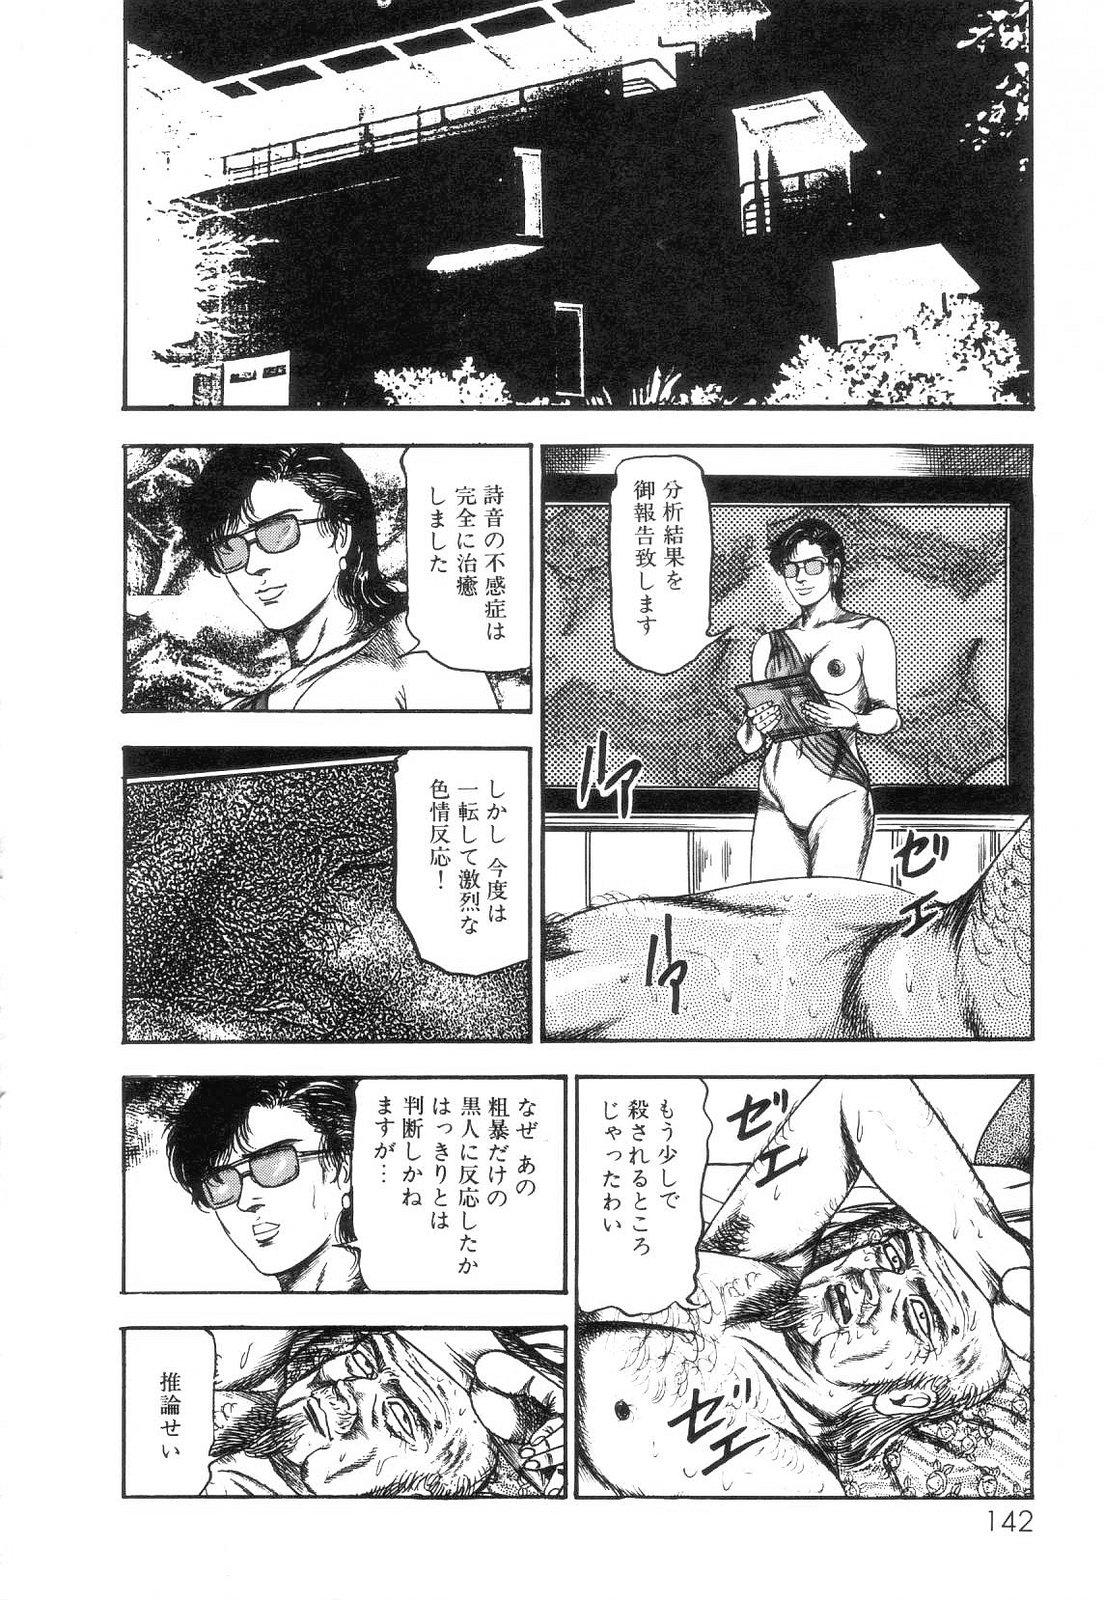 Shiro no Mokushiroku Vol. 2 - Shion Ryoujoku no Shou 143